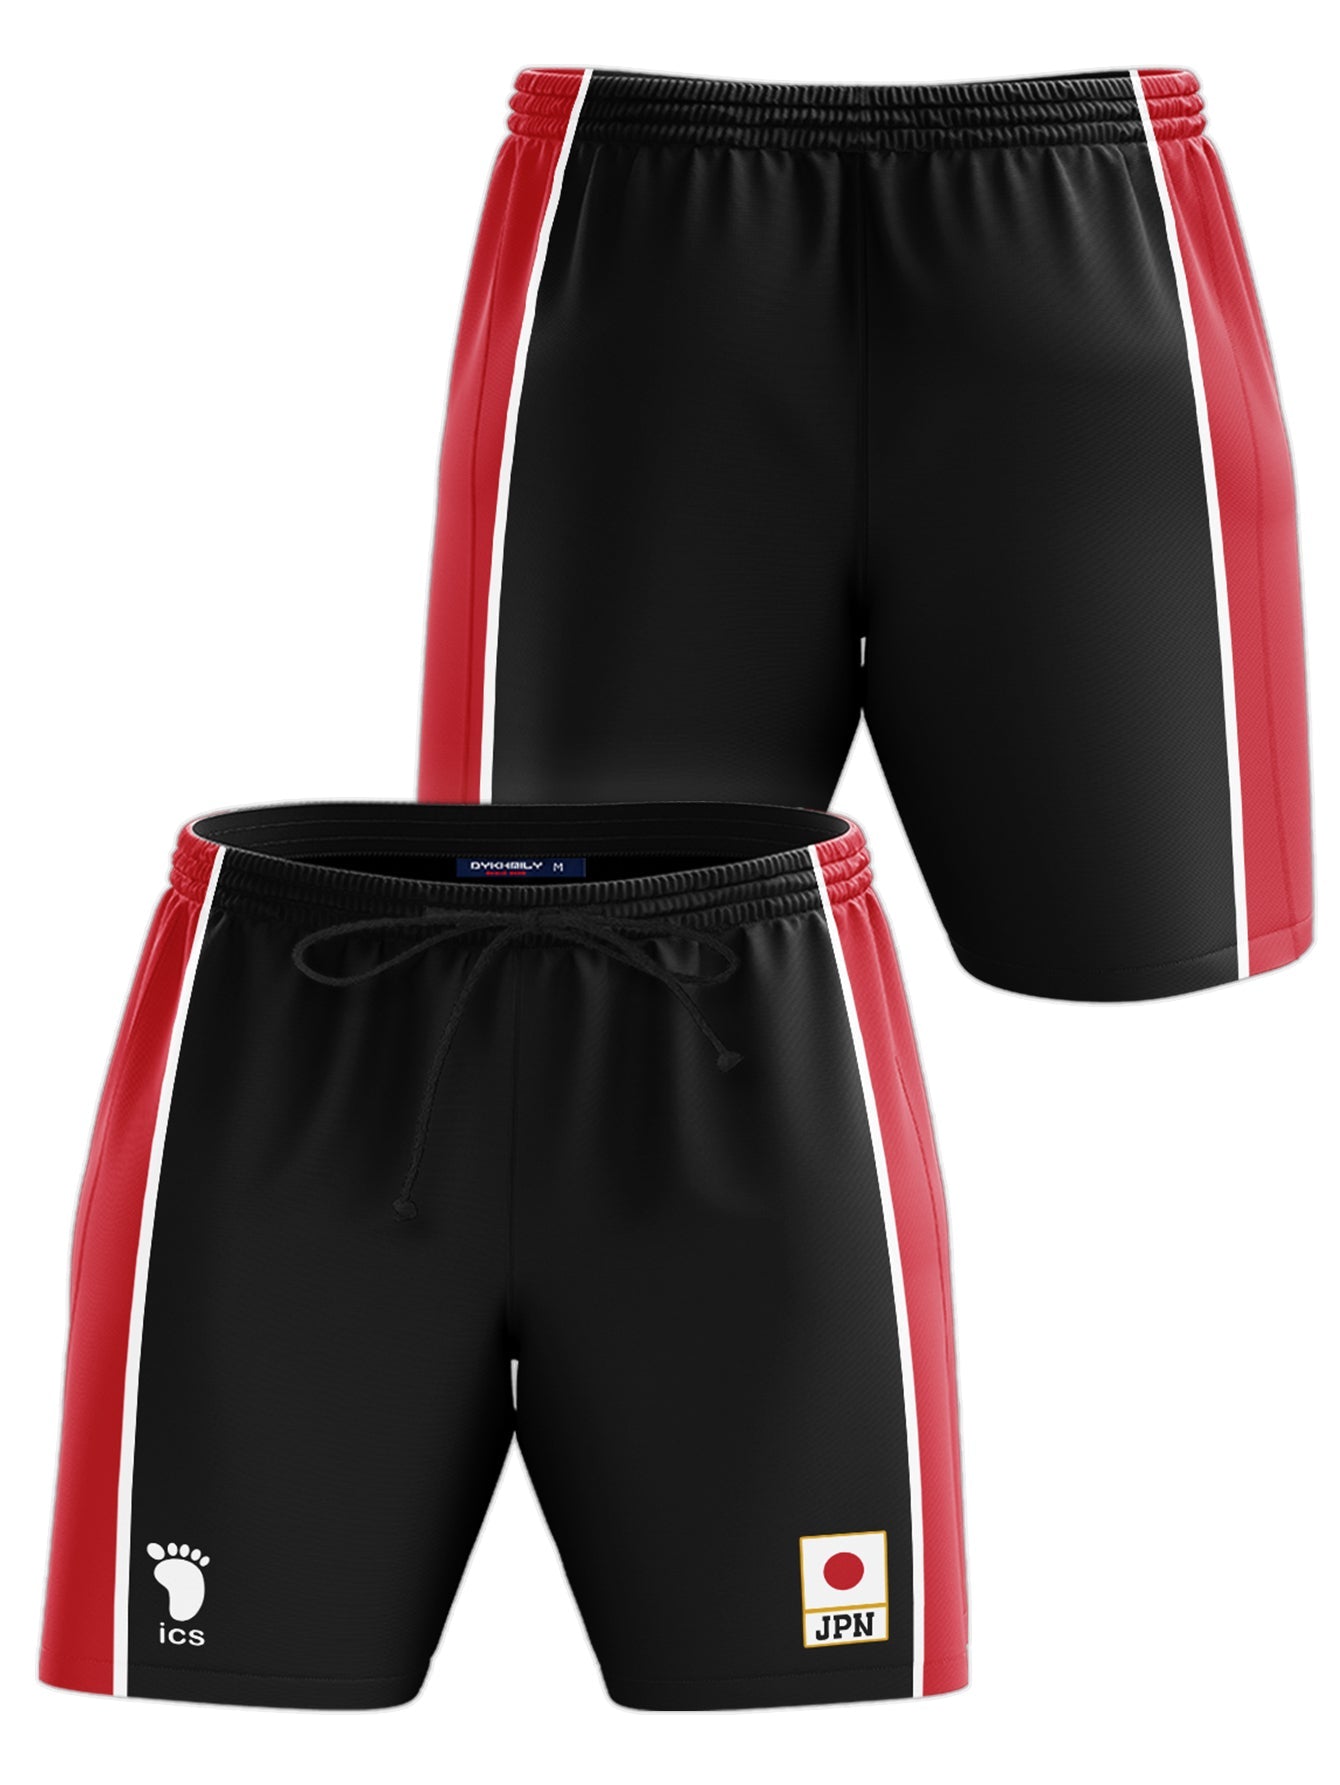 Fandomaniax - Haikyuu National Team Libero Beach Shorts